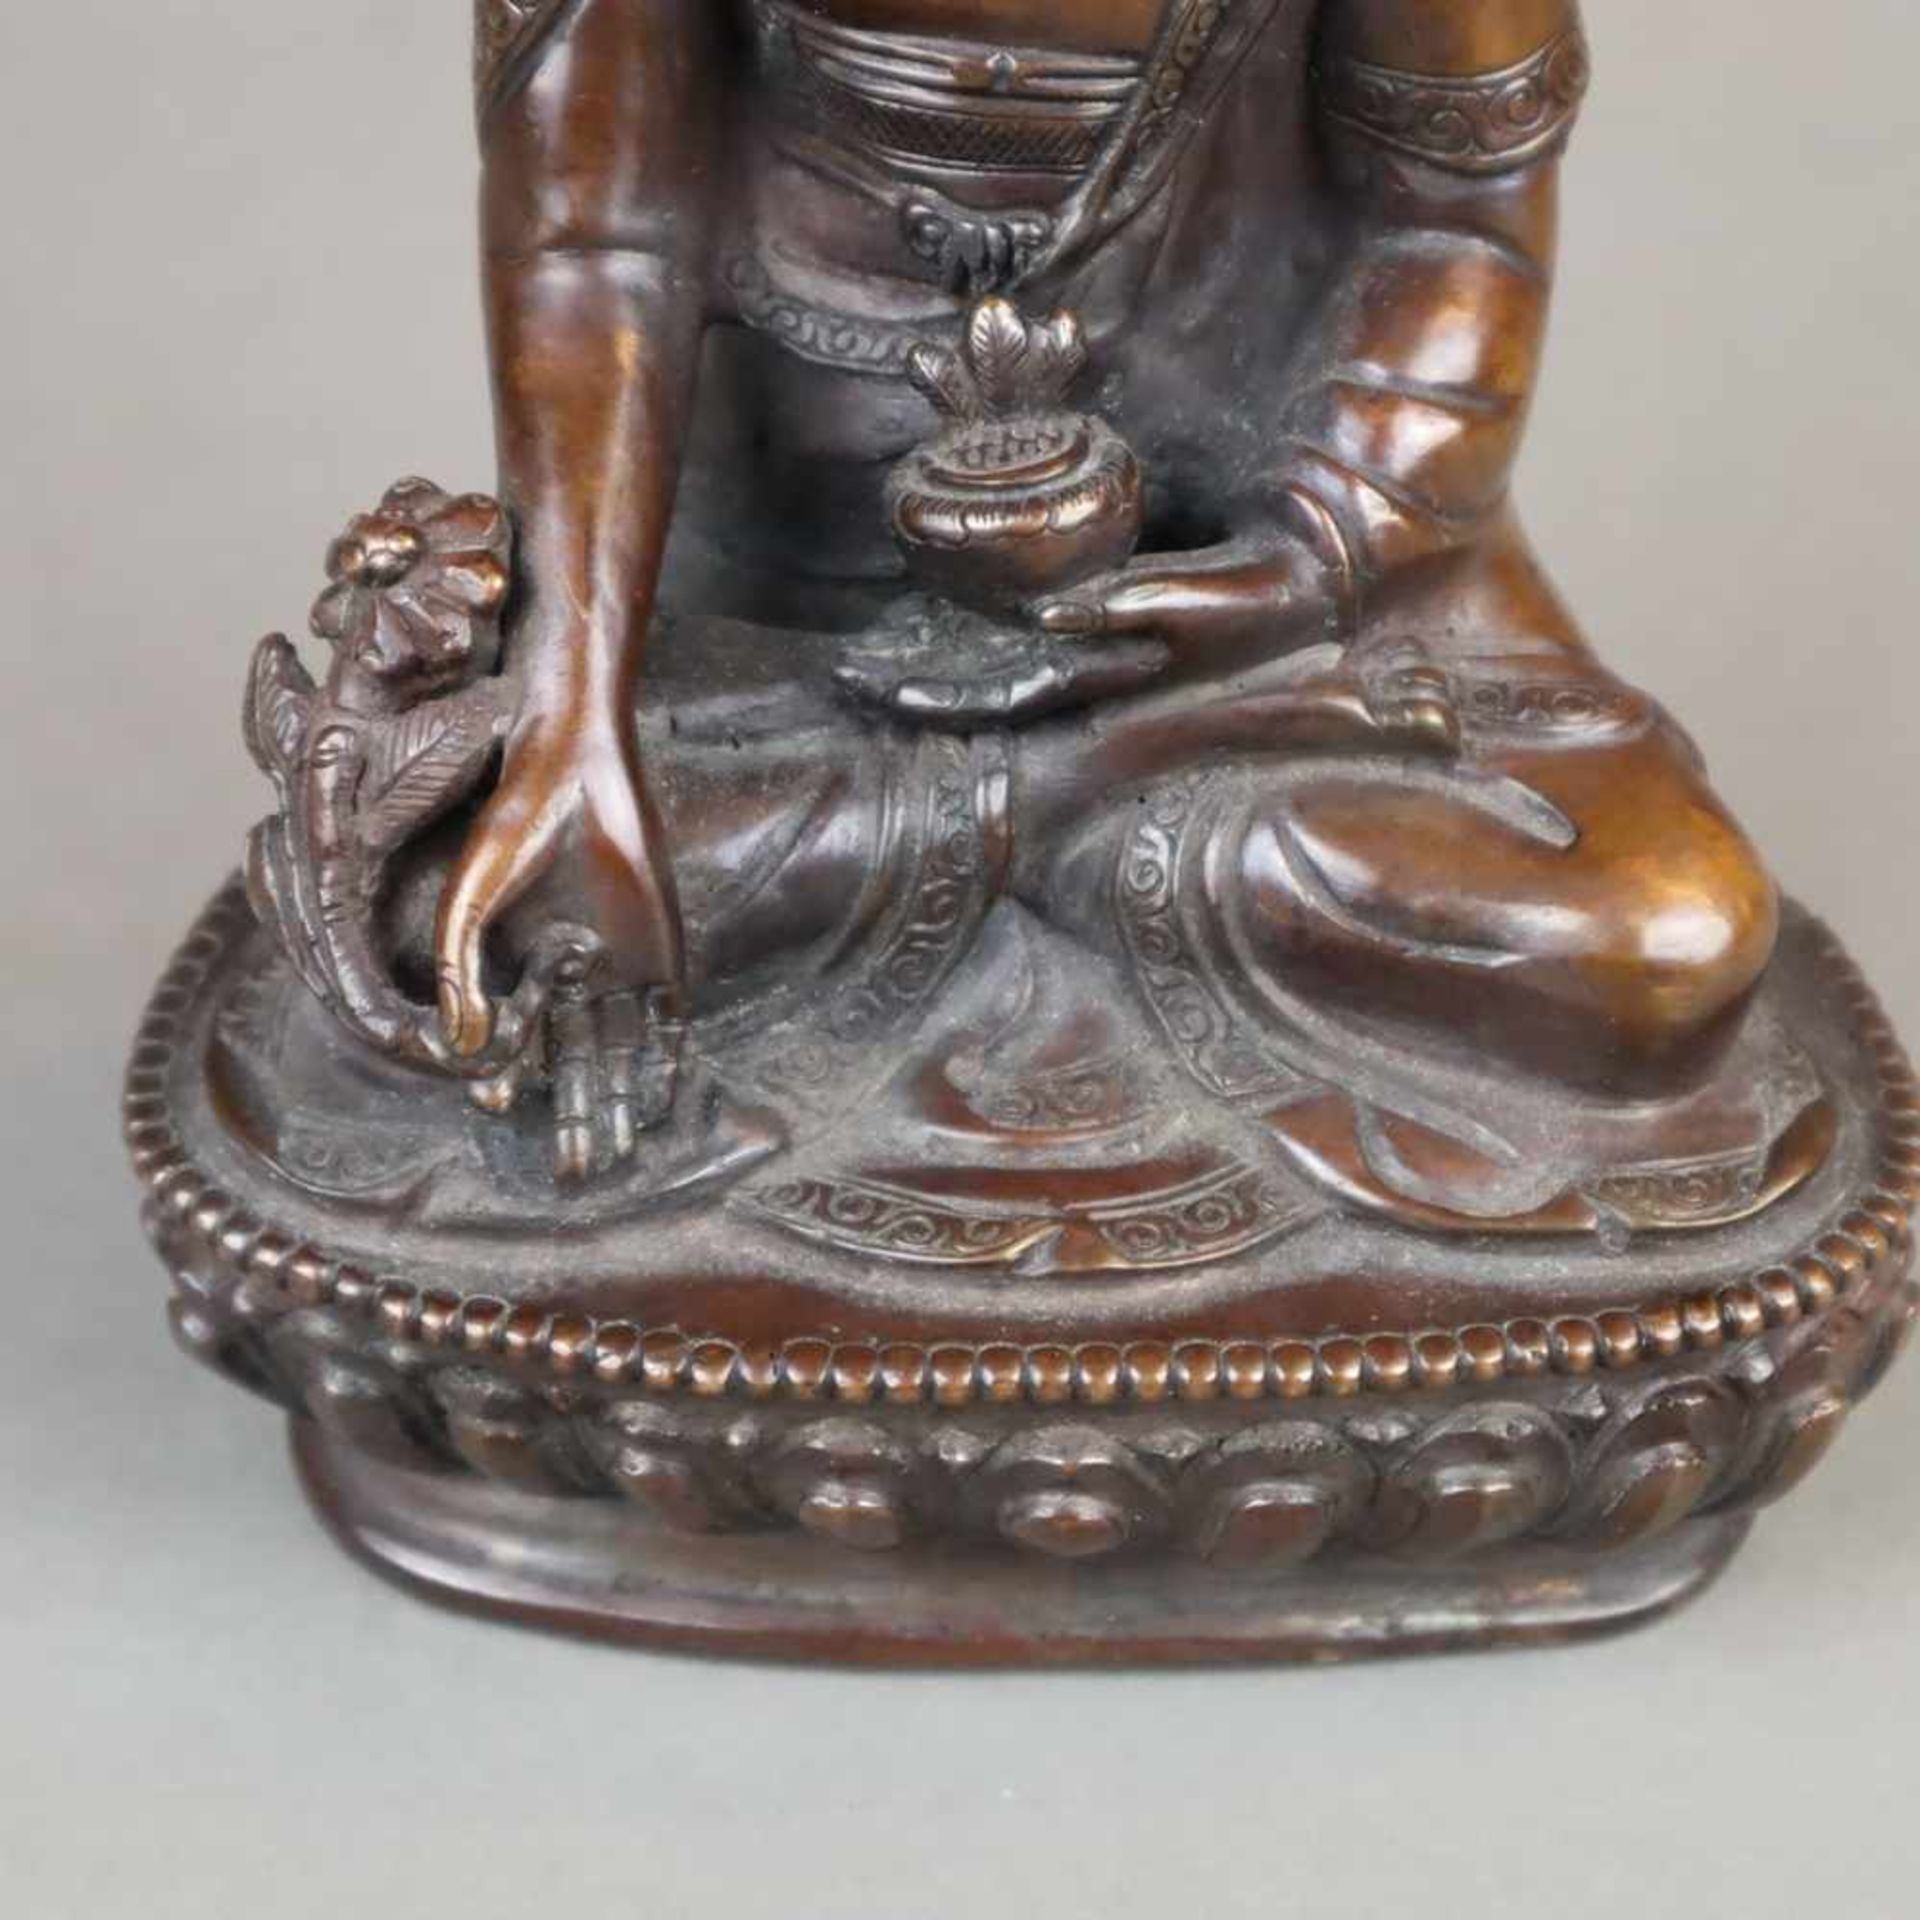 Der Medizin-Buddha Bhaisajyaguru - China, Kupferbronze, im Meditationssitz auf einem einfachen - Bild 6 aus 8